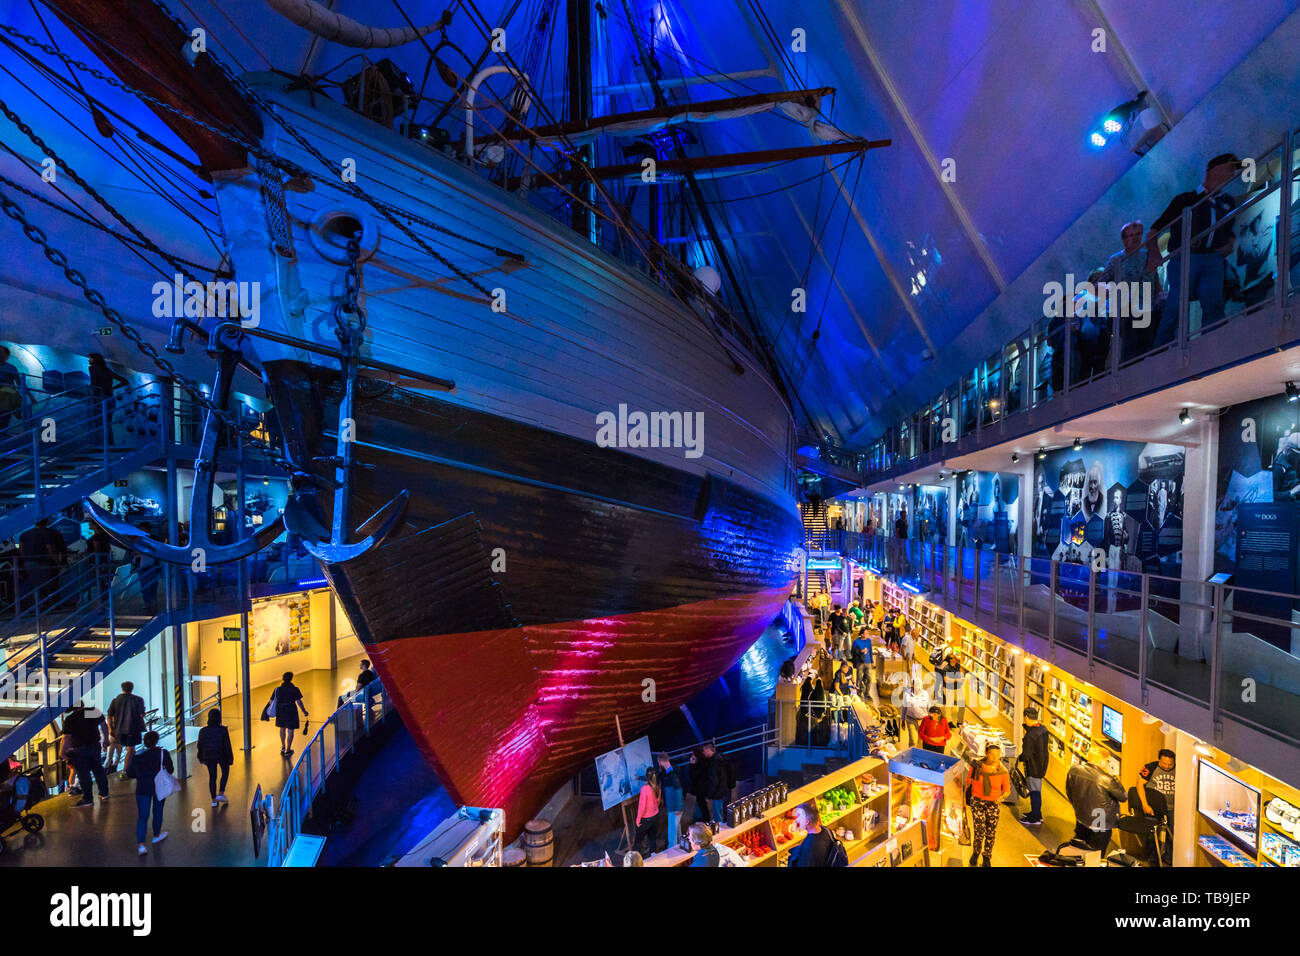 Die Fram Schiff von norwegischen Forschern verwendet erhalten bleibt intakt im Fram Museum (Frammuseet). Oslo, Norwegen, August 2018 Stockfoto